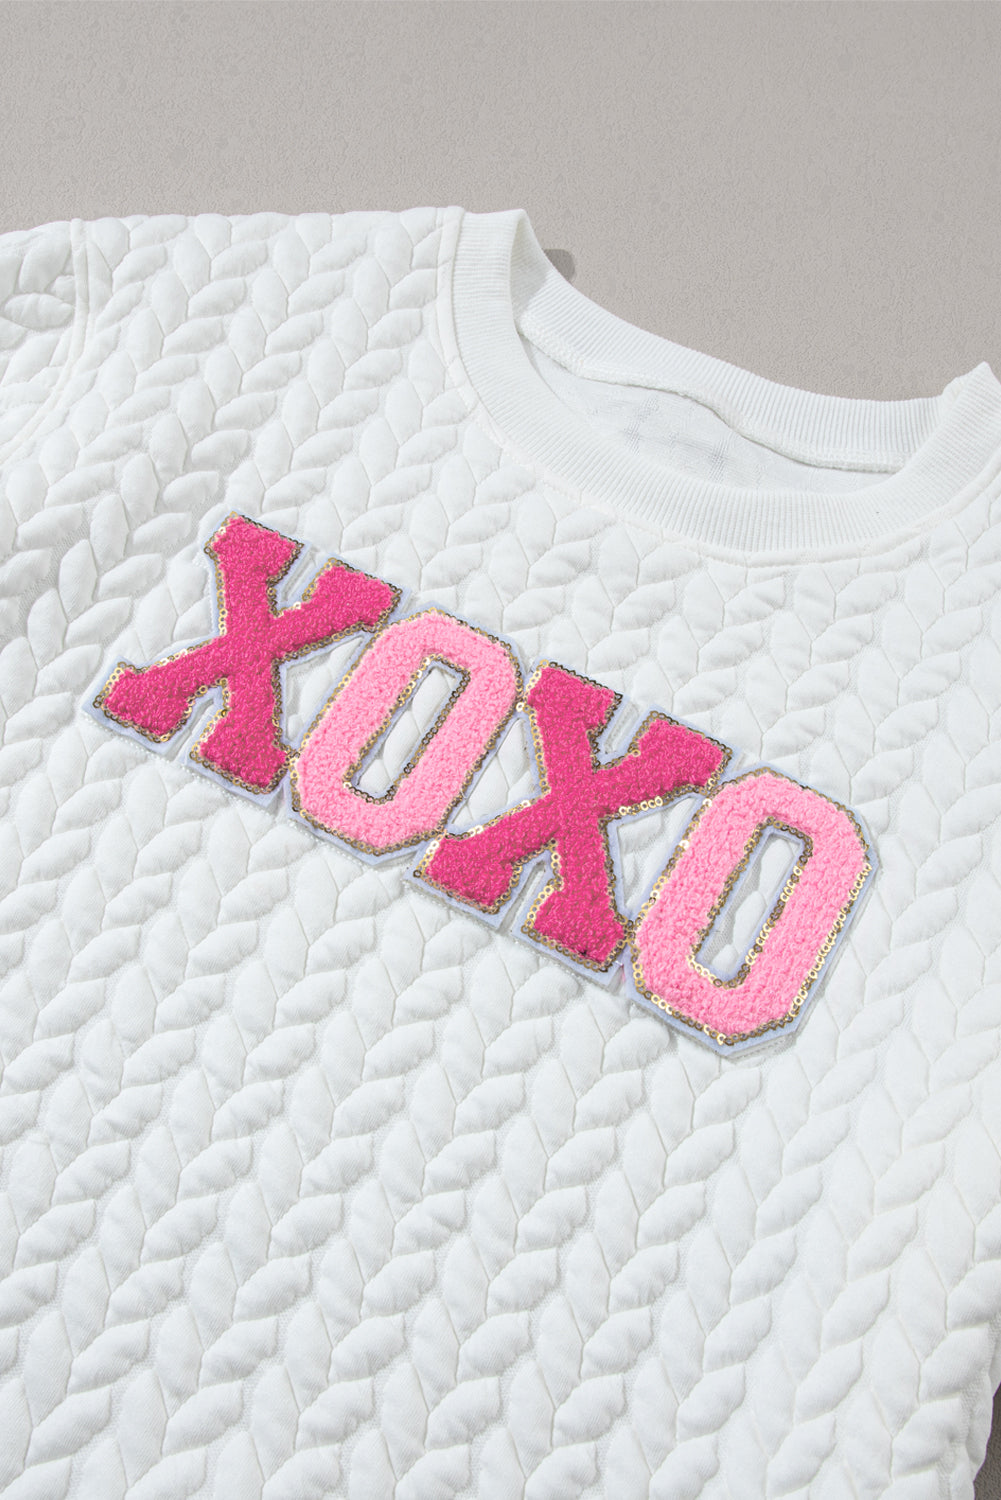 White XOXO Glitter Chenille Cable Knit Pullover Sweater The Magnolia Cottage Boutique